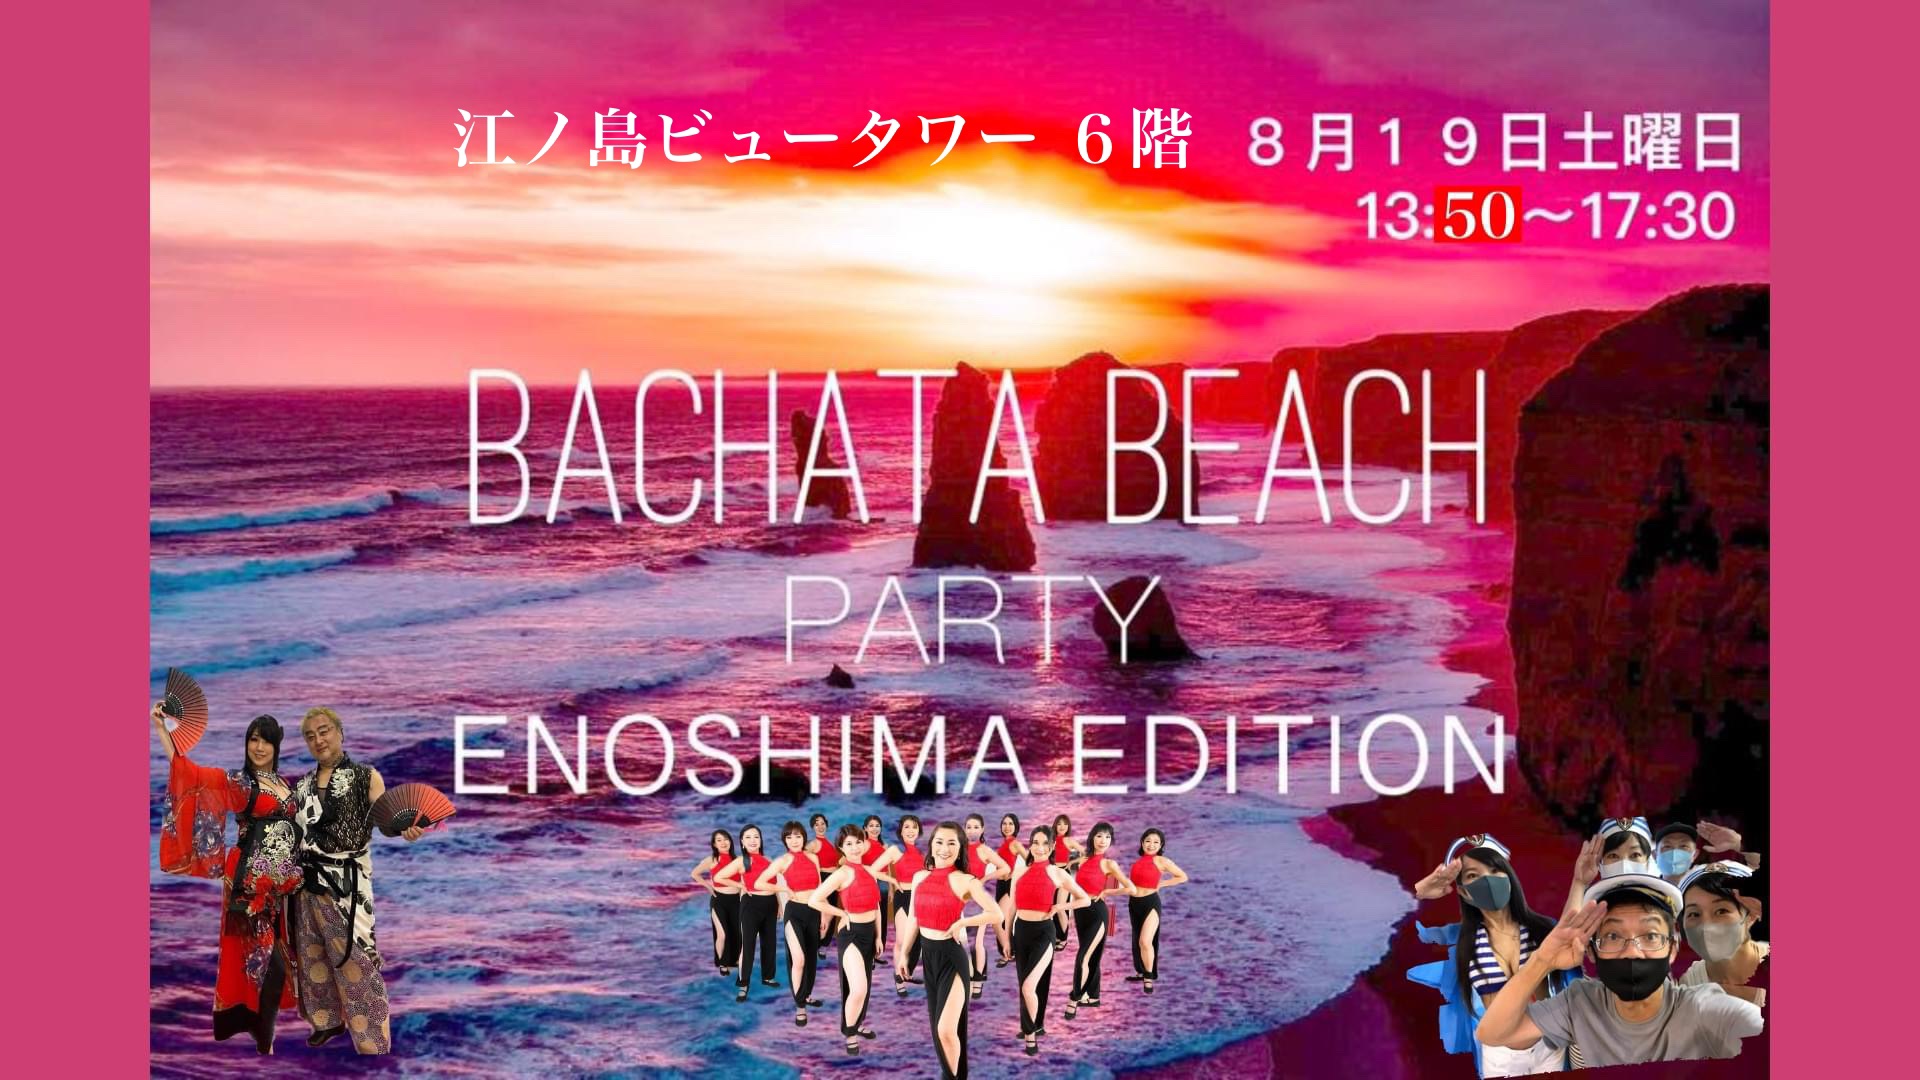 BACHATA BEACH PARTY IN ENOSHIMA